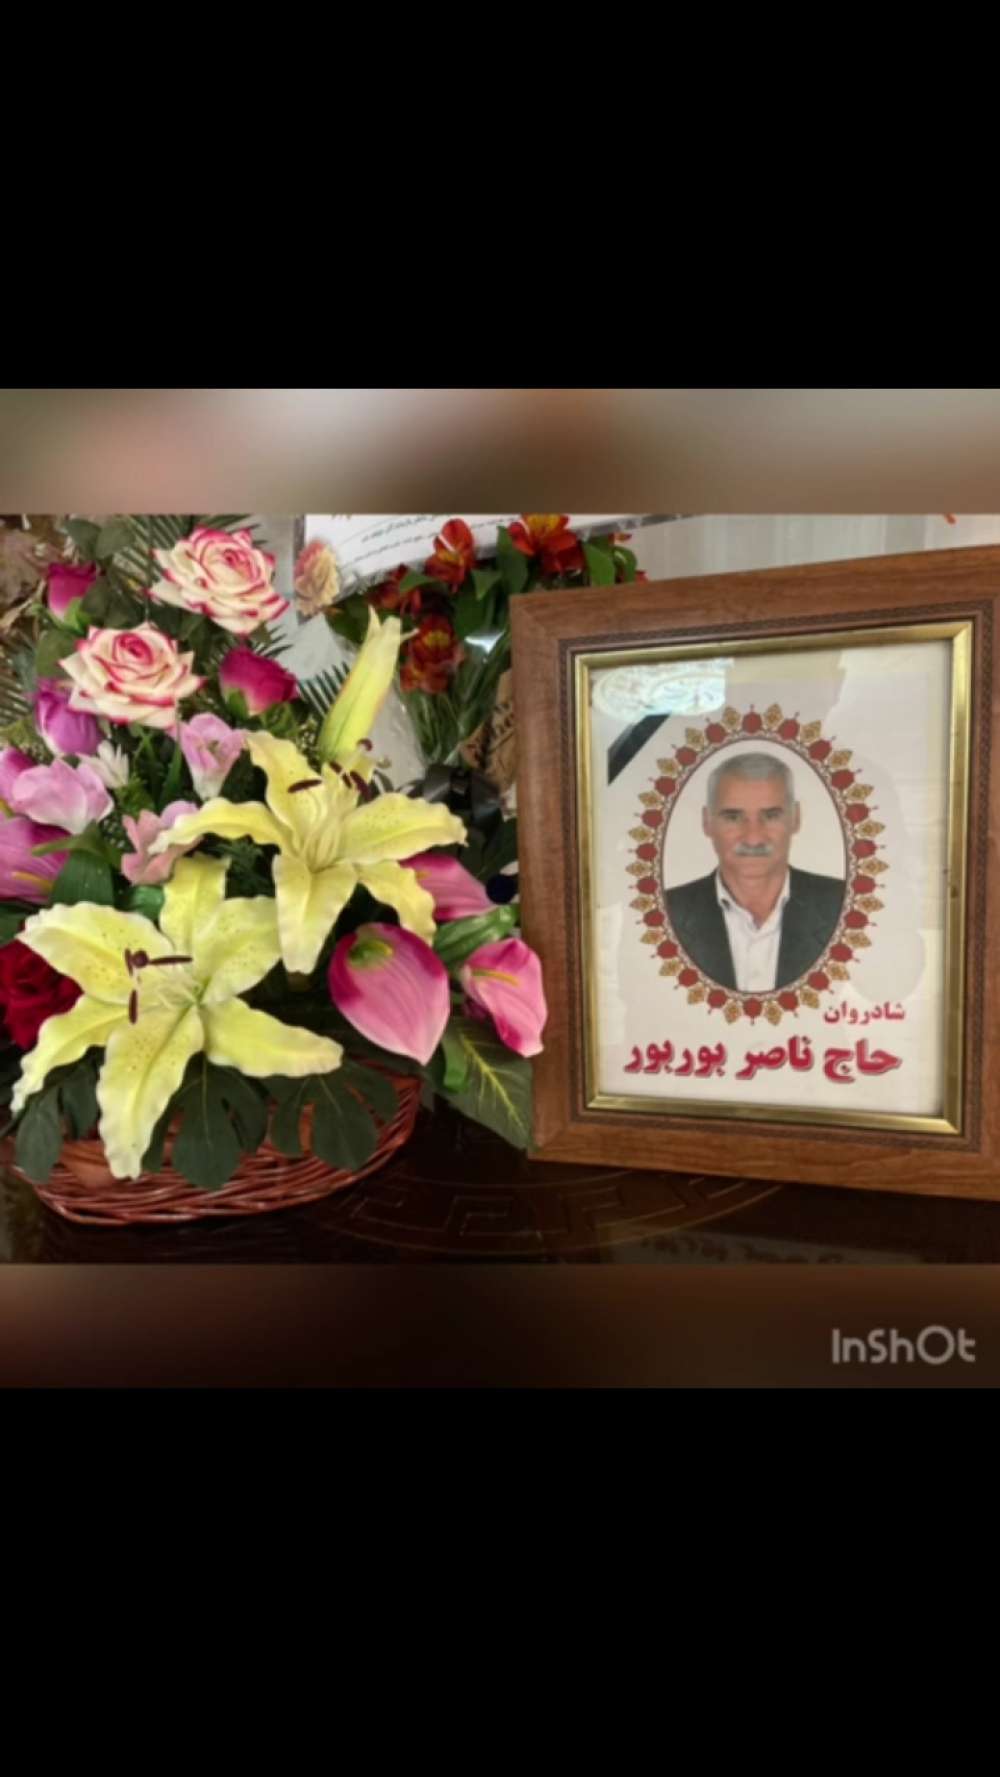 زنده یاد حاج ناصر بوربوراژدری